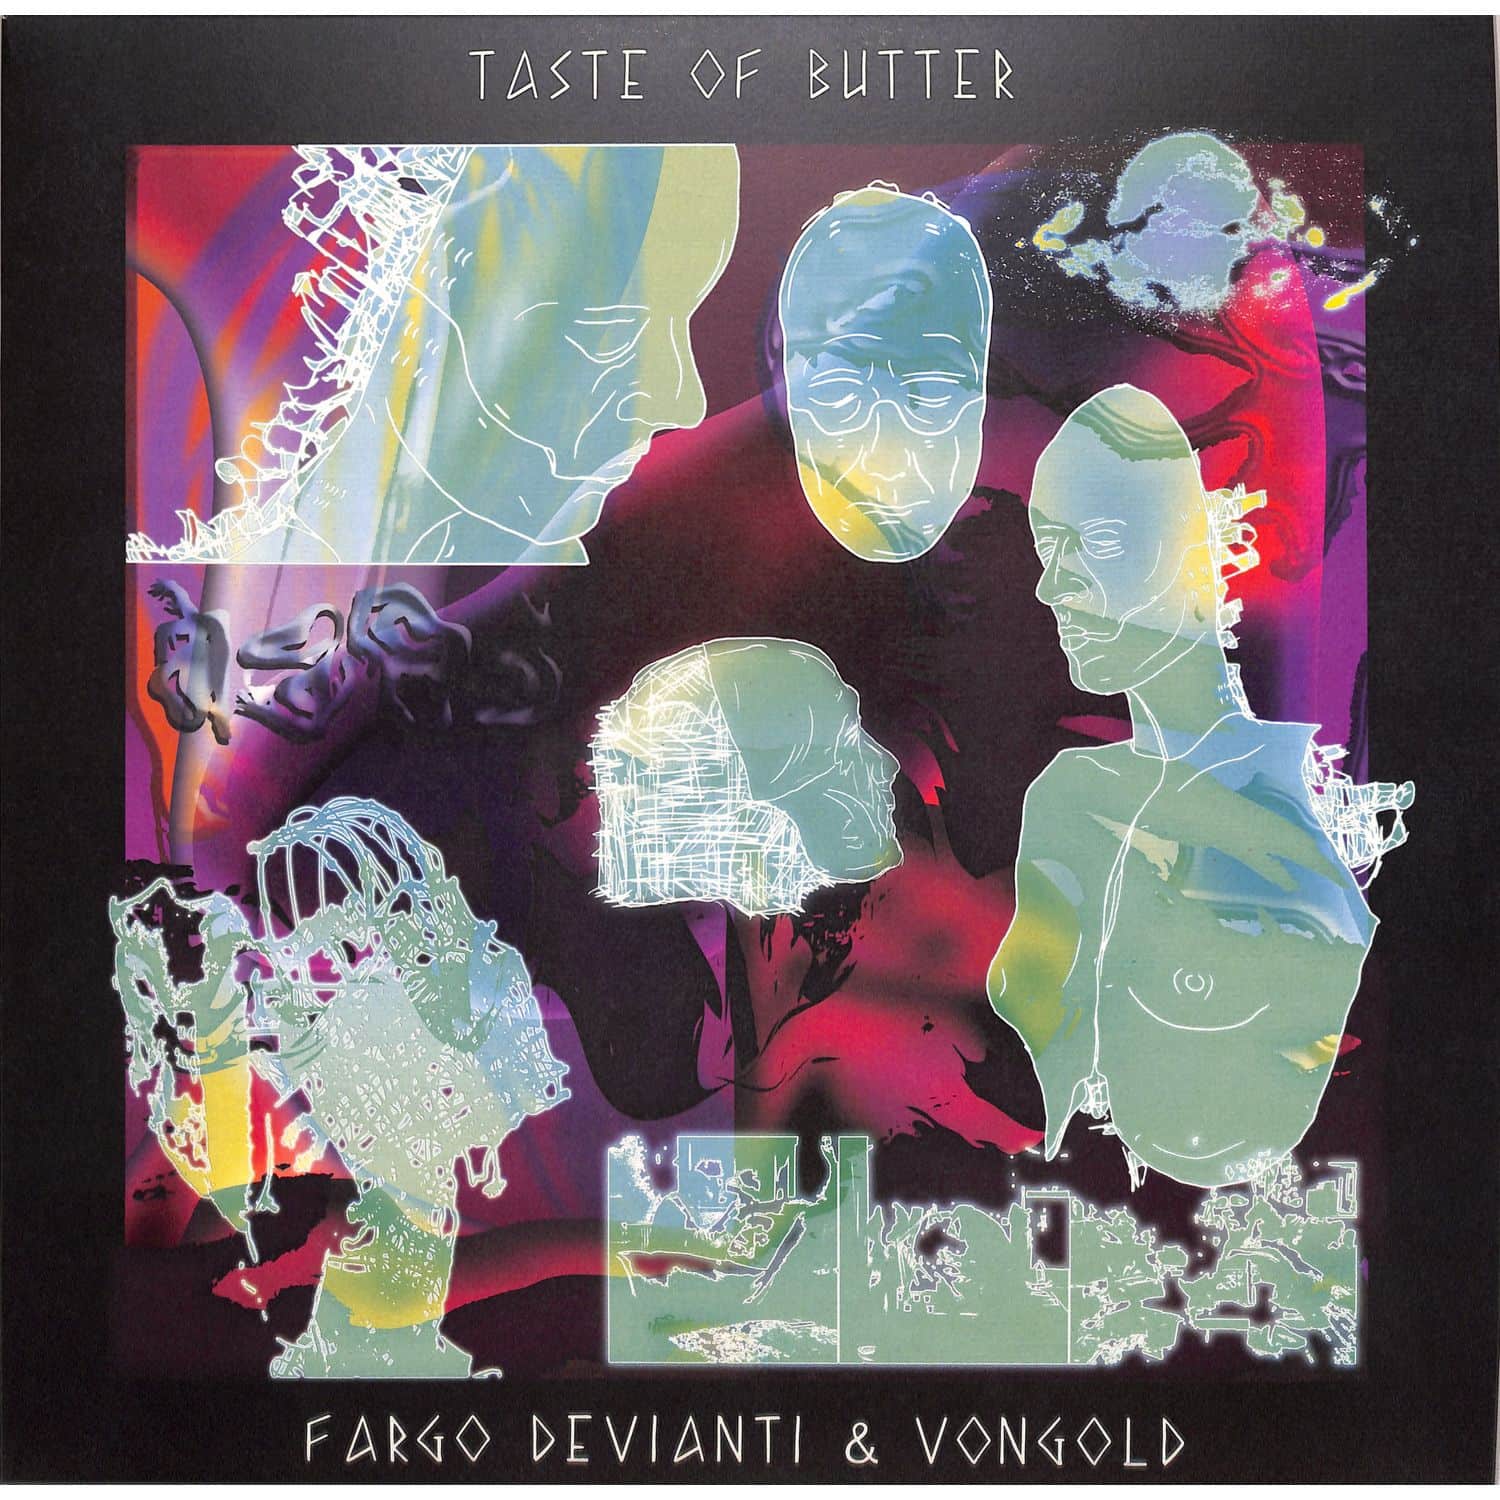 Fargo Devianti & Vongold - TASTE OF BUTTER EP